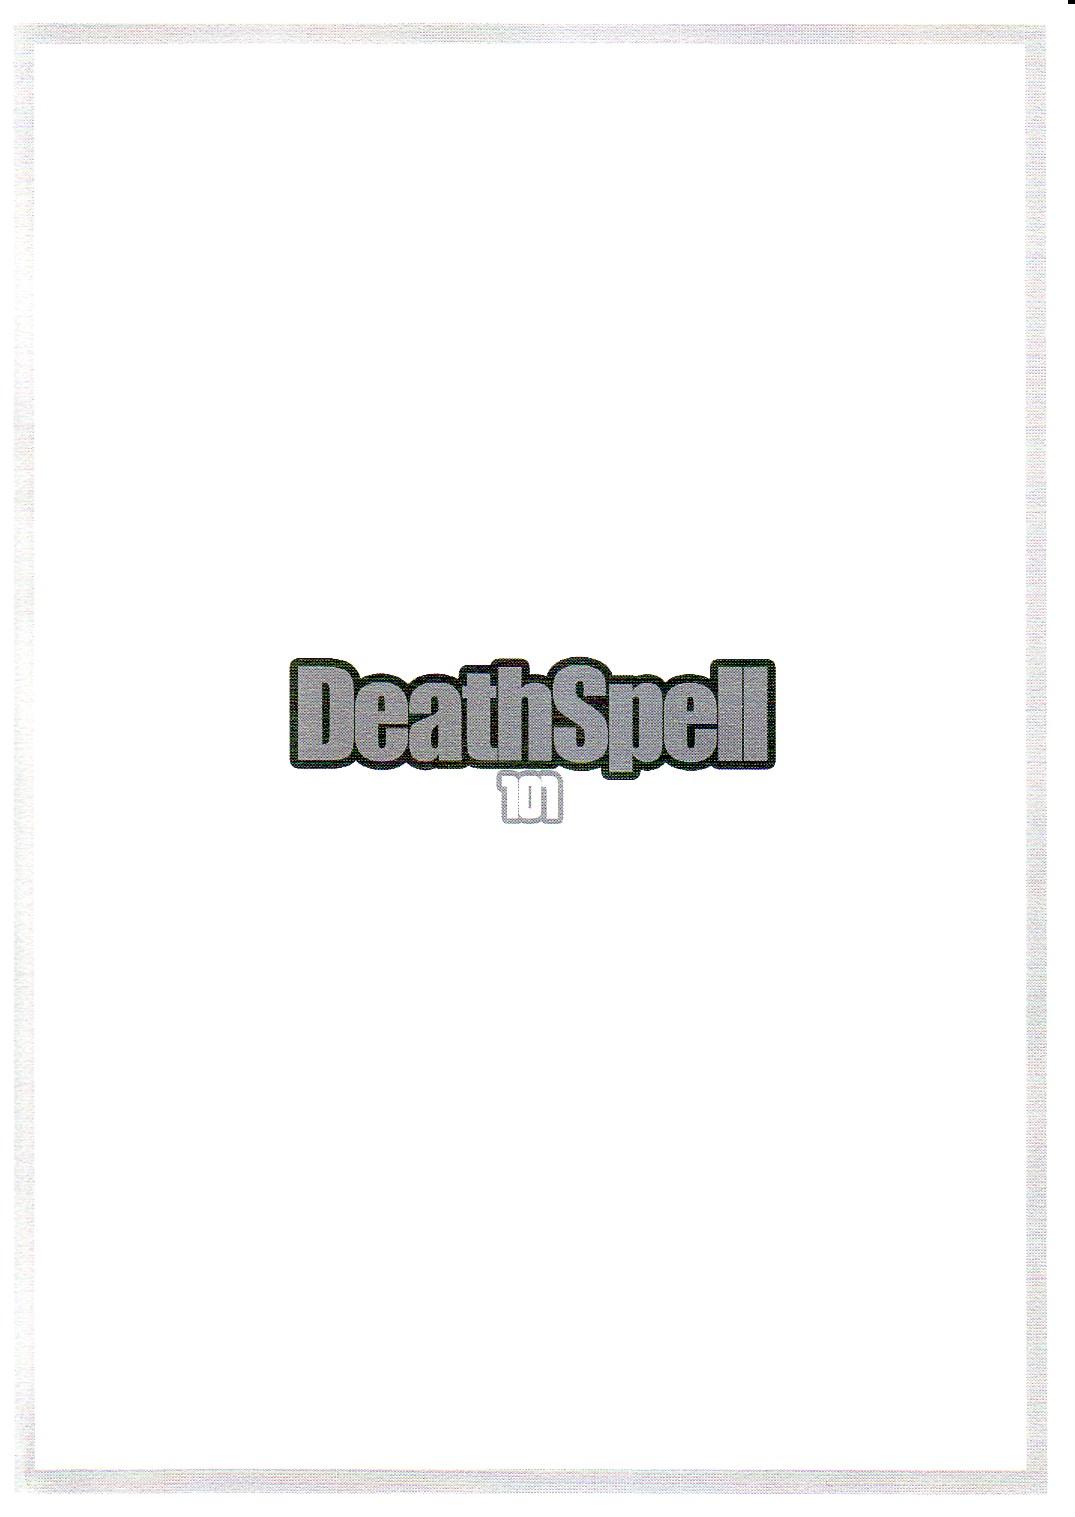 DeathSpell 101 21